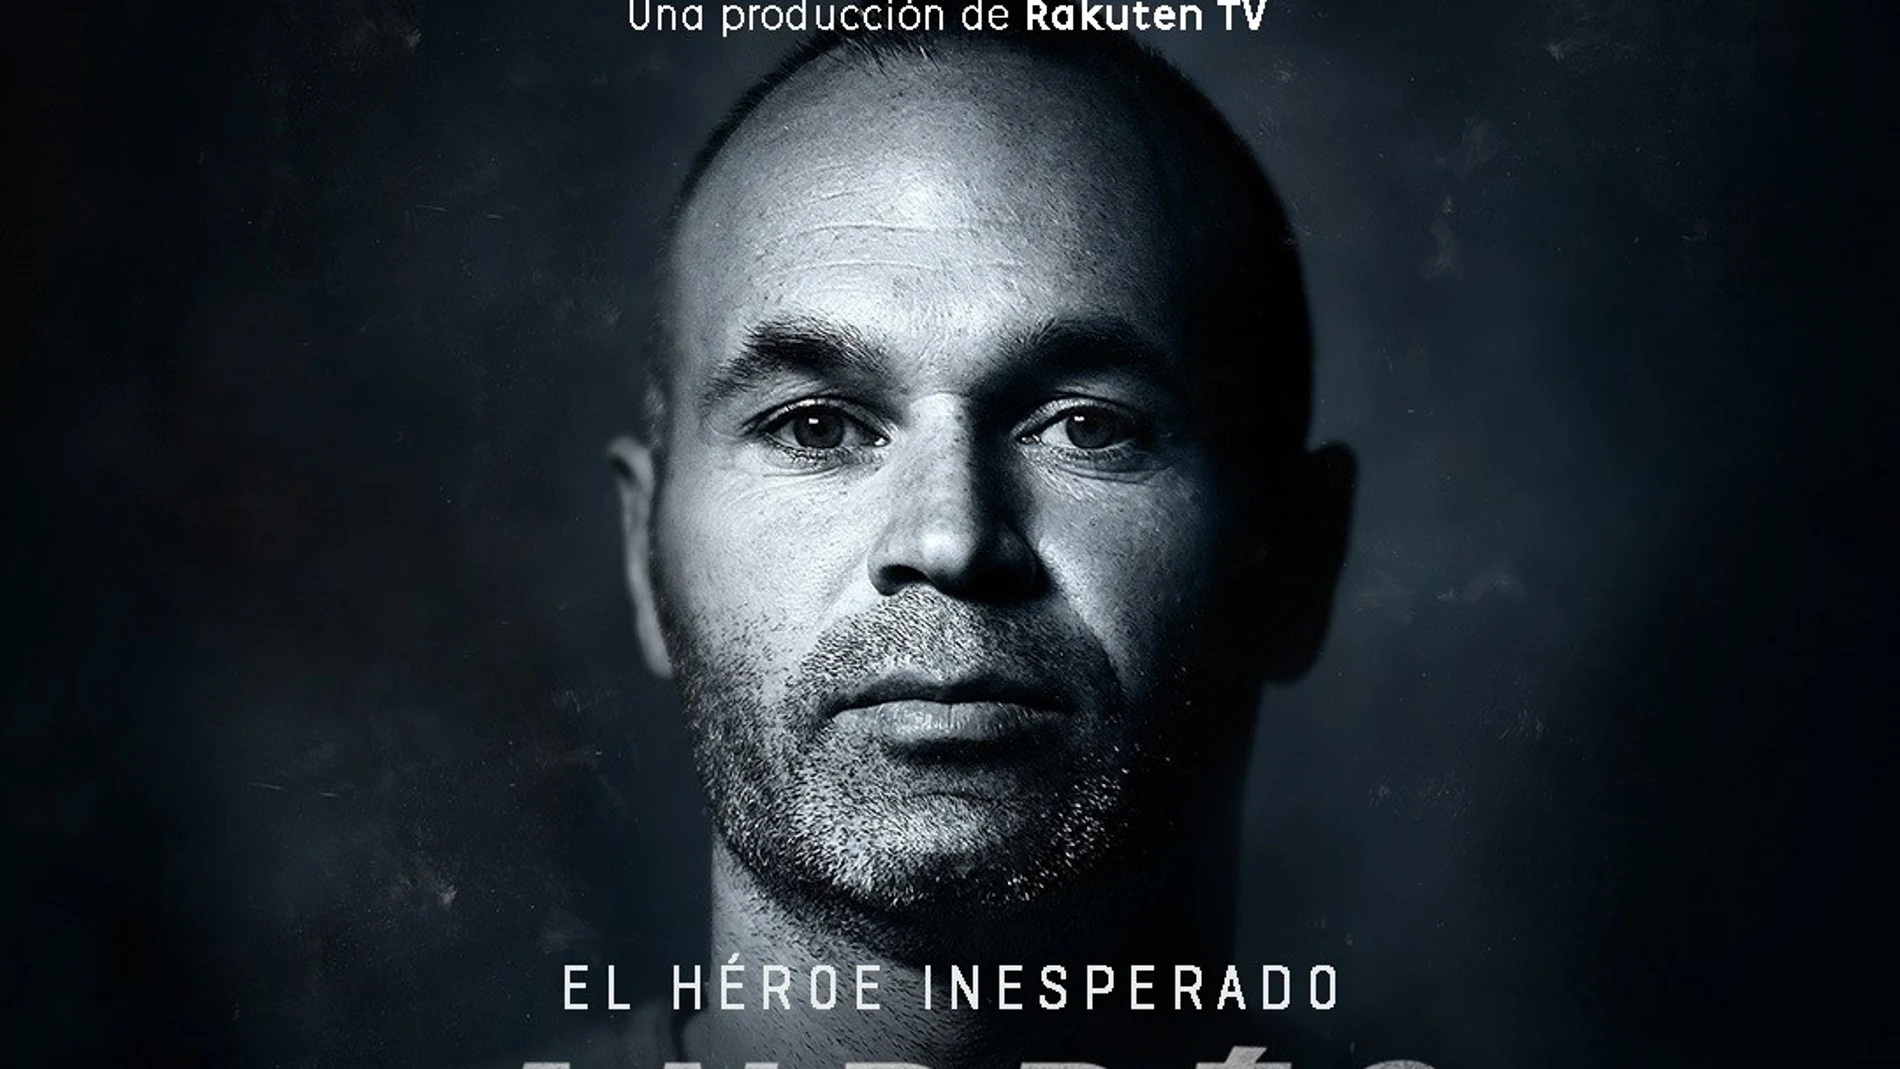 Fútbol.- El documental 'Andrés Iniesta, el héroe inesperado' se estrenará en Rakuten el 23 de abril